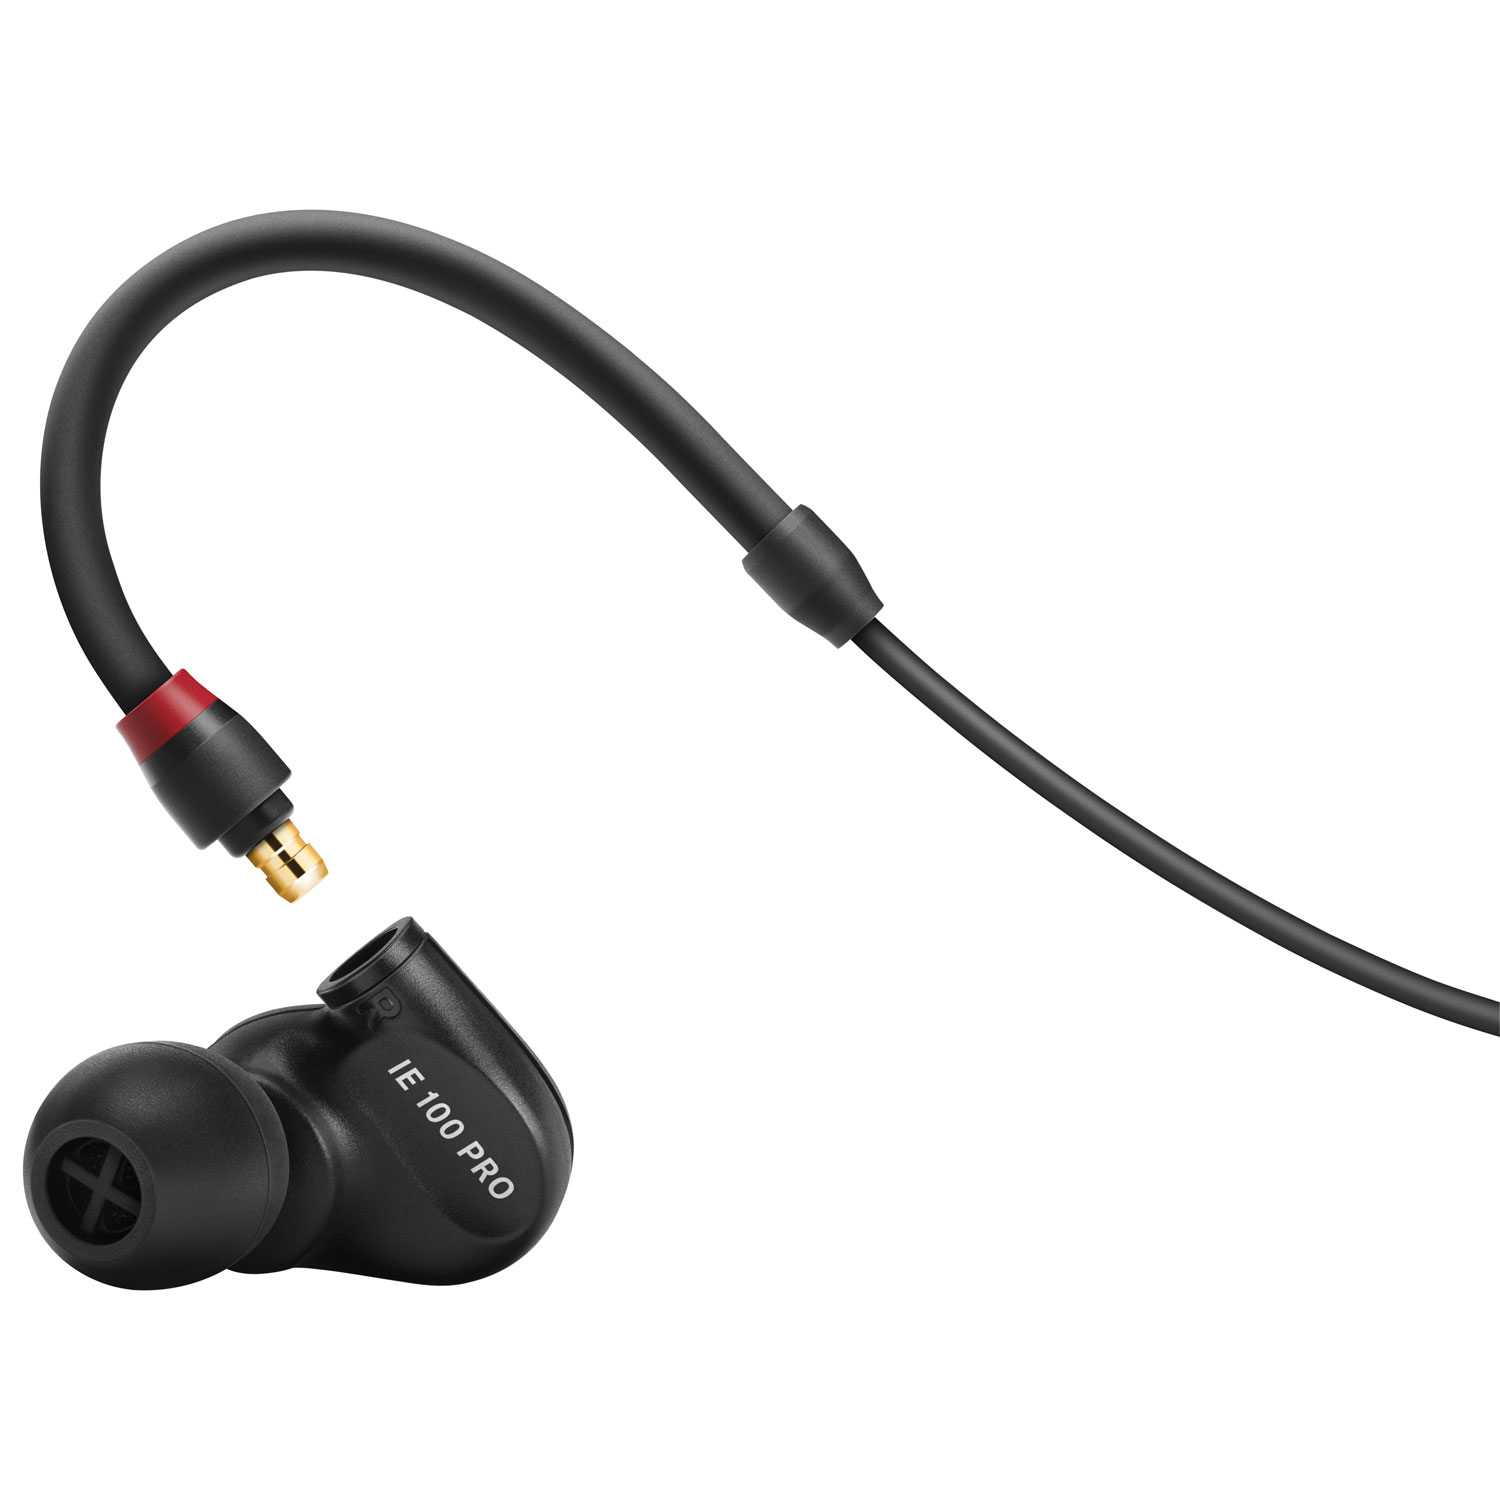 Sennheiser IE 100 Pro In-Ear Monitor Headphones - Black | Best Buy 